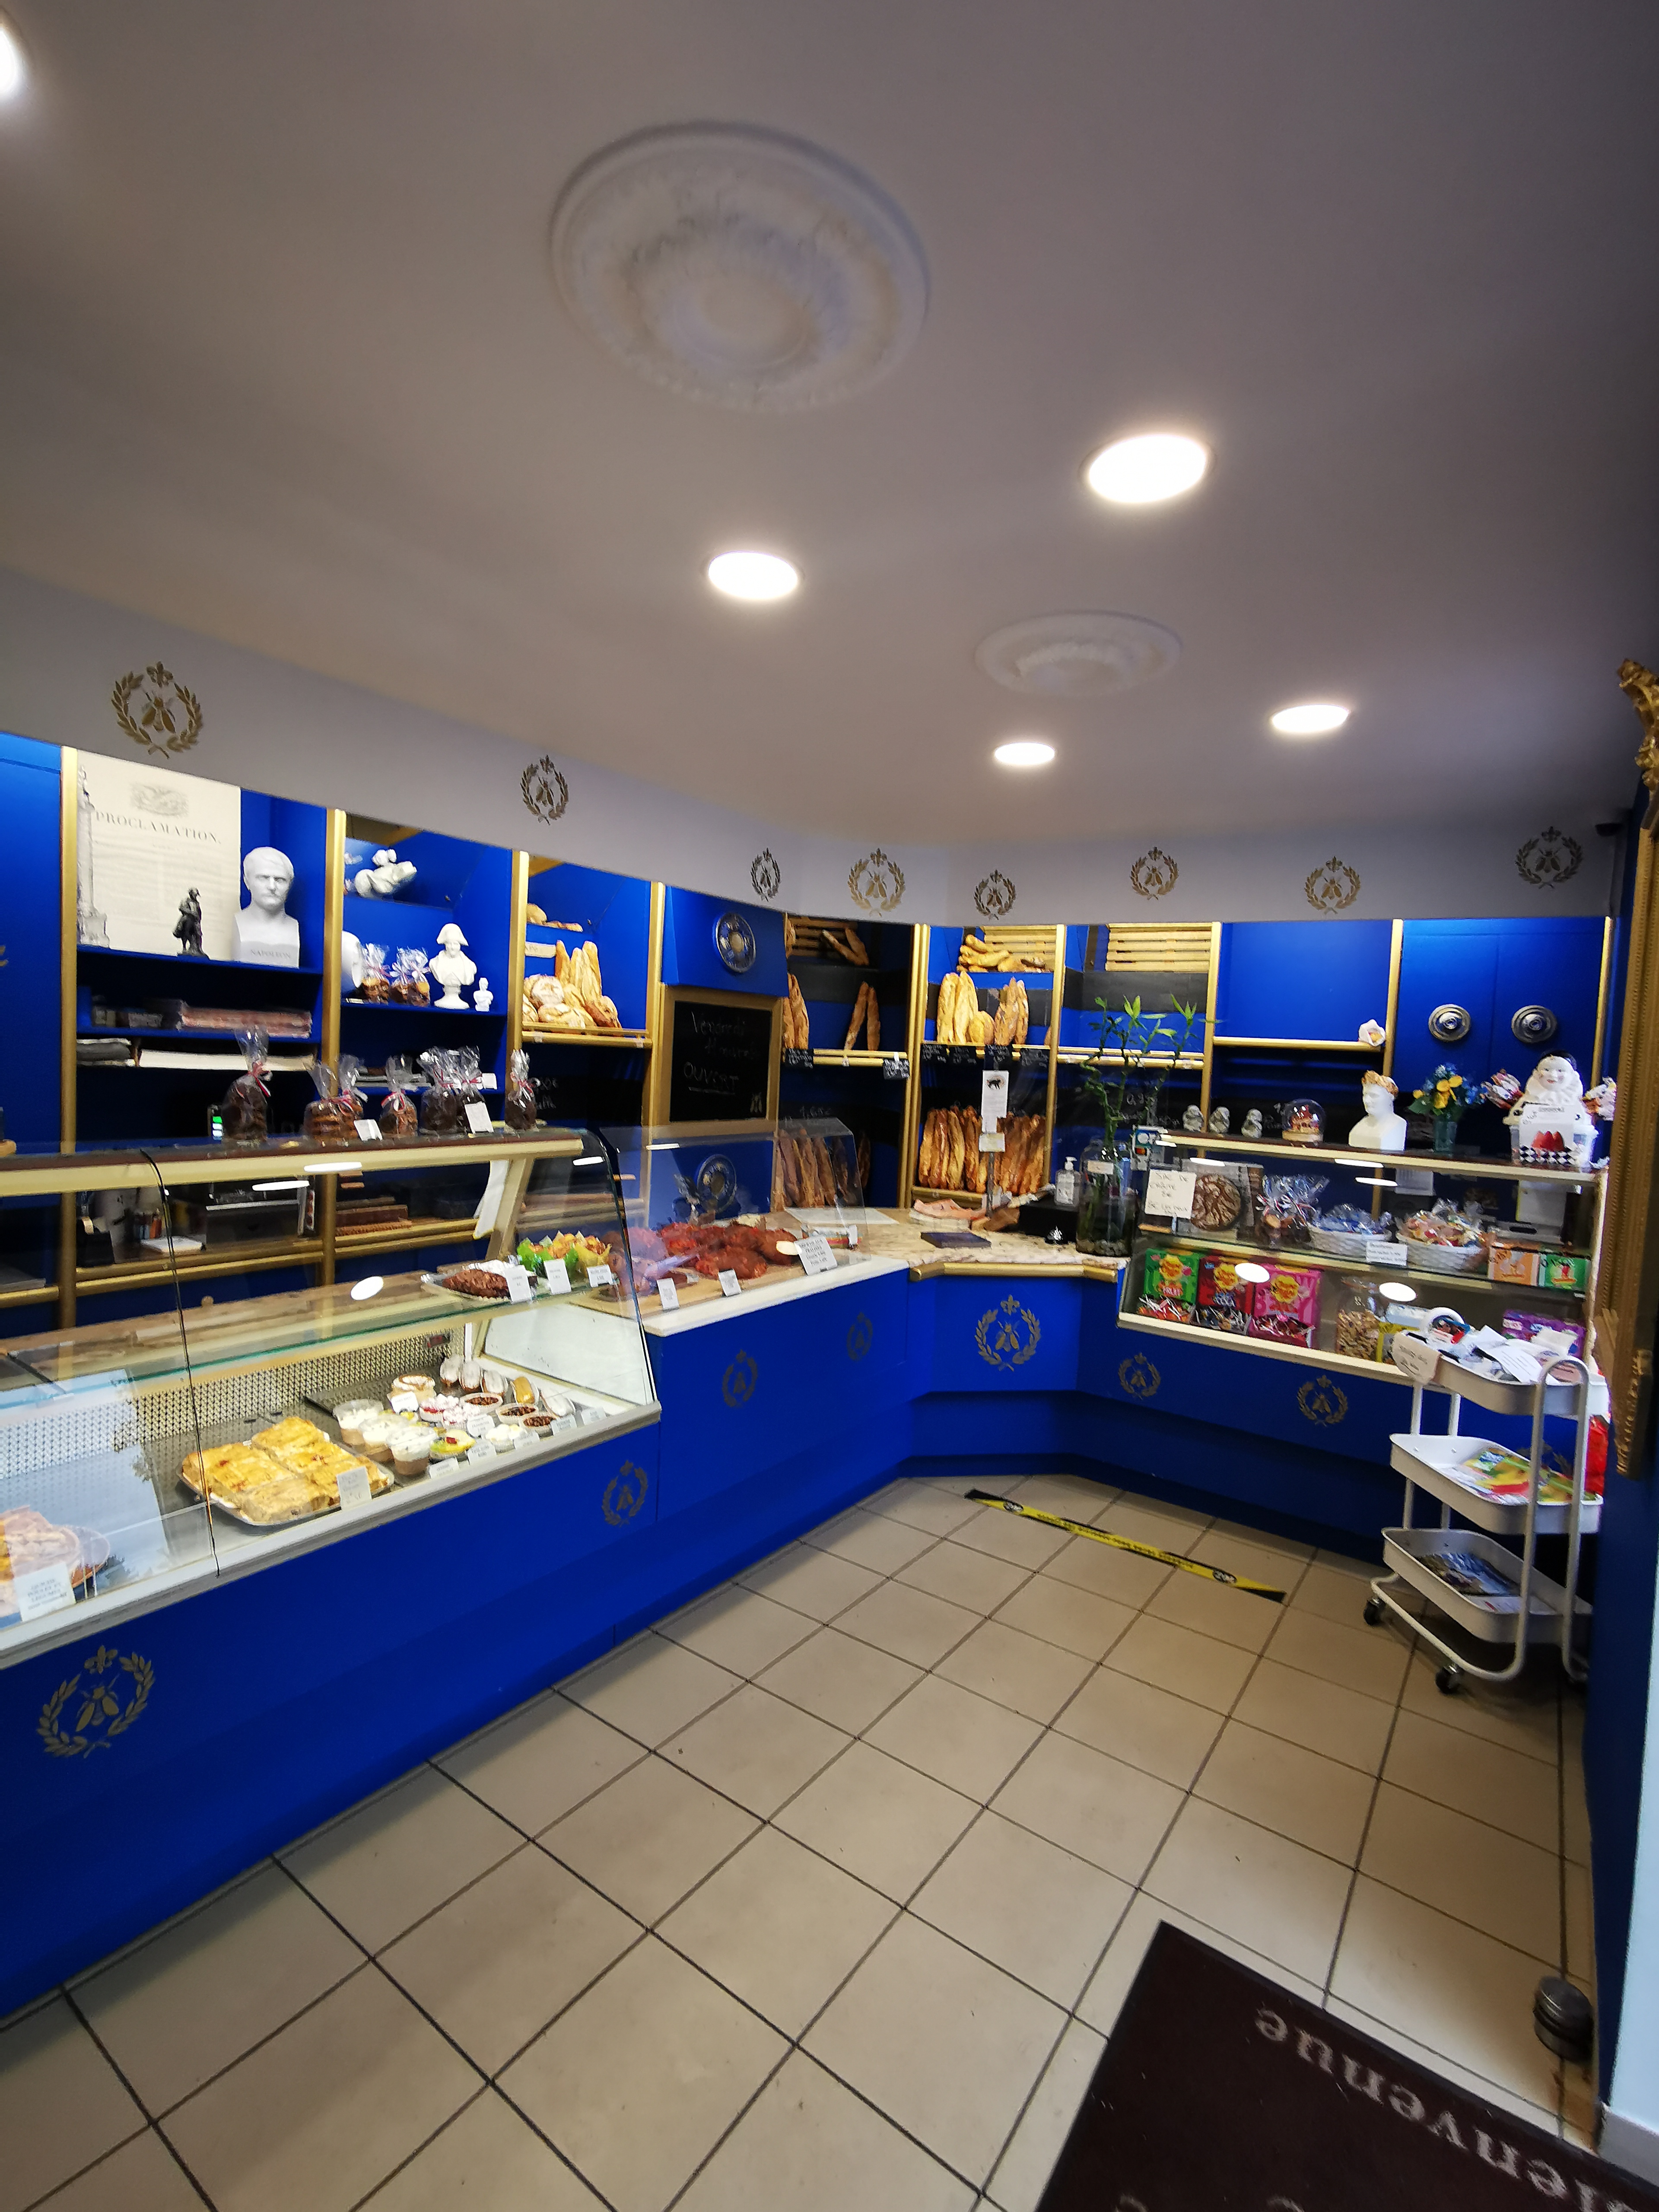 Boulangerie Pâtisserie proche des zones touristiques de Vulcania, Clermont-Ferrand, Volvic, en plein cœur de la chaine des puys, et au centre d'un charmant village. 
De nombreux commerces essentiels sont à proximité (maison médicale, pharmacies, hôtels, restaurants, coiffeurs, boucher, bars, tabac …).
Disposition des locaux :
- une surface de vente d'environ 20 m², 
- un laboratoire pâtissier d'environ 13 m²
- un fournil d'environ 50 m²,
- plusieurs réserves d'environ 70 m² (réparties sur 2 étages)
Le tout est en bon état, très propre et immédiatement fonctionnel.
De nombreux équipements sont présents comme un grand four à pain 3 étages au gaz (récemment révisé), un laminoir, une diviseuse, une balancelle, un pétrin, deux chambres froides, des chambres de pousse, des réfrigérateurs et congélateurs ainsi qu'une cellule négative.
Une jolie boutique accueillante et lumineuse avec de nombreux espaces de rangements ainsi qu’une terrasse pouvant accueillir 2 petites tables.
Un grand parking se situe également face à la boulangerie, sur la place du village.
3 salariés sont en place actuellement
Prix du fond de commerce : 150 000€, 
Il est possible aussi d’acheter les murs du commerce et l'appartement en duplex d'environ 90 m² situé au-dessus de celui-ci (refait à neuf il y a 5 ans) pour un montant de 265 000€.  

Pour plus de photos et de renseignements, n'hésitez pas à nous contacter 

* les diagnostics sont en cours de réalisation